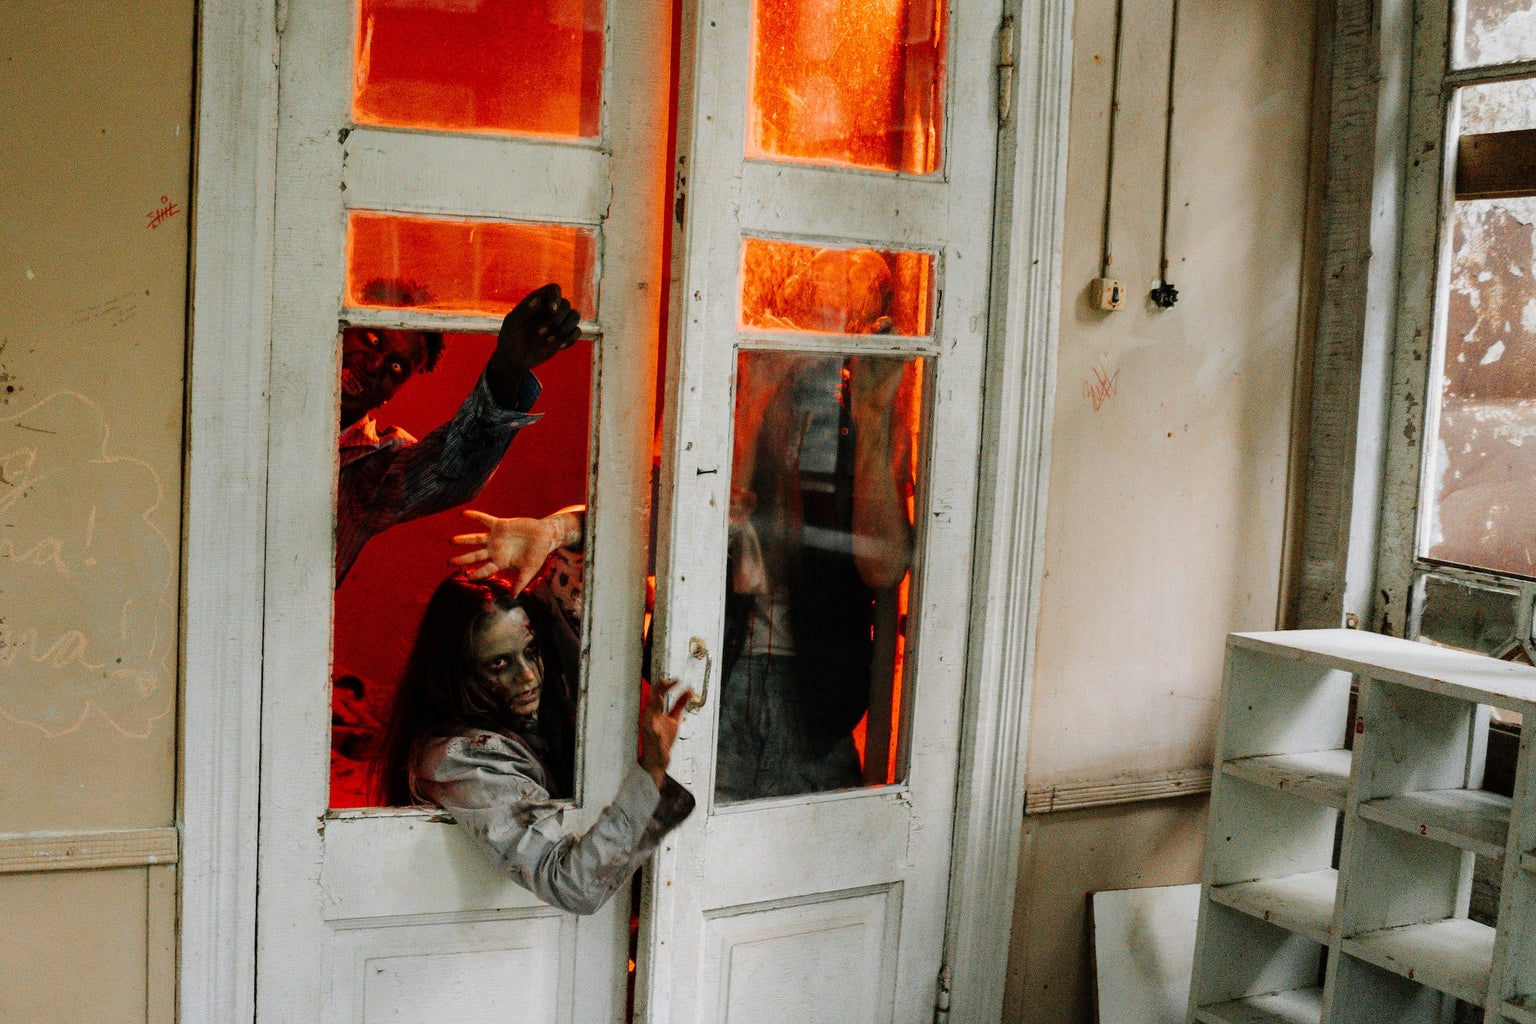 haunted house; zombies at door